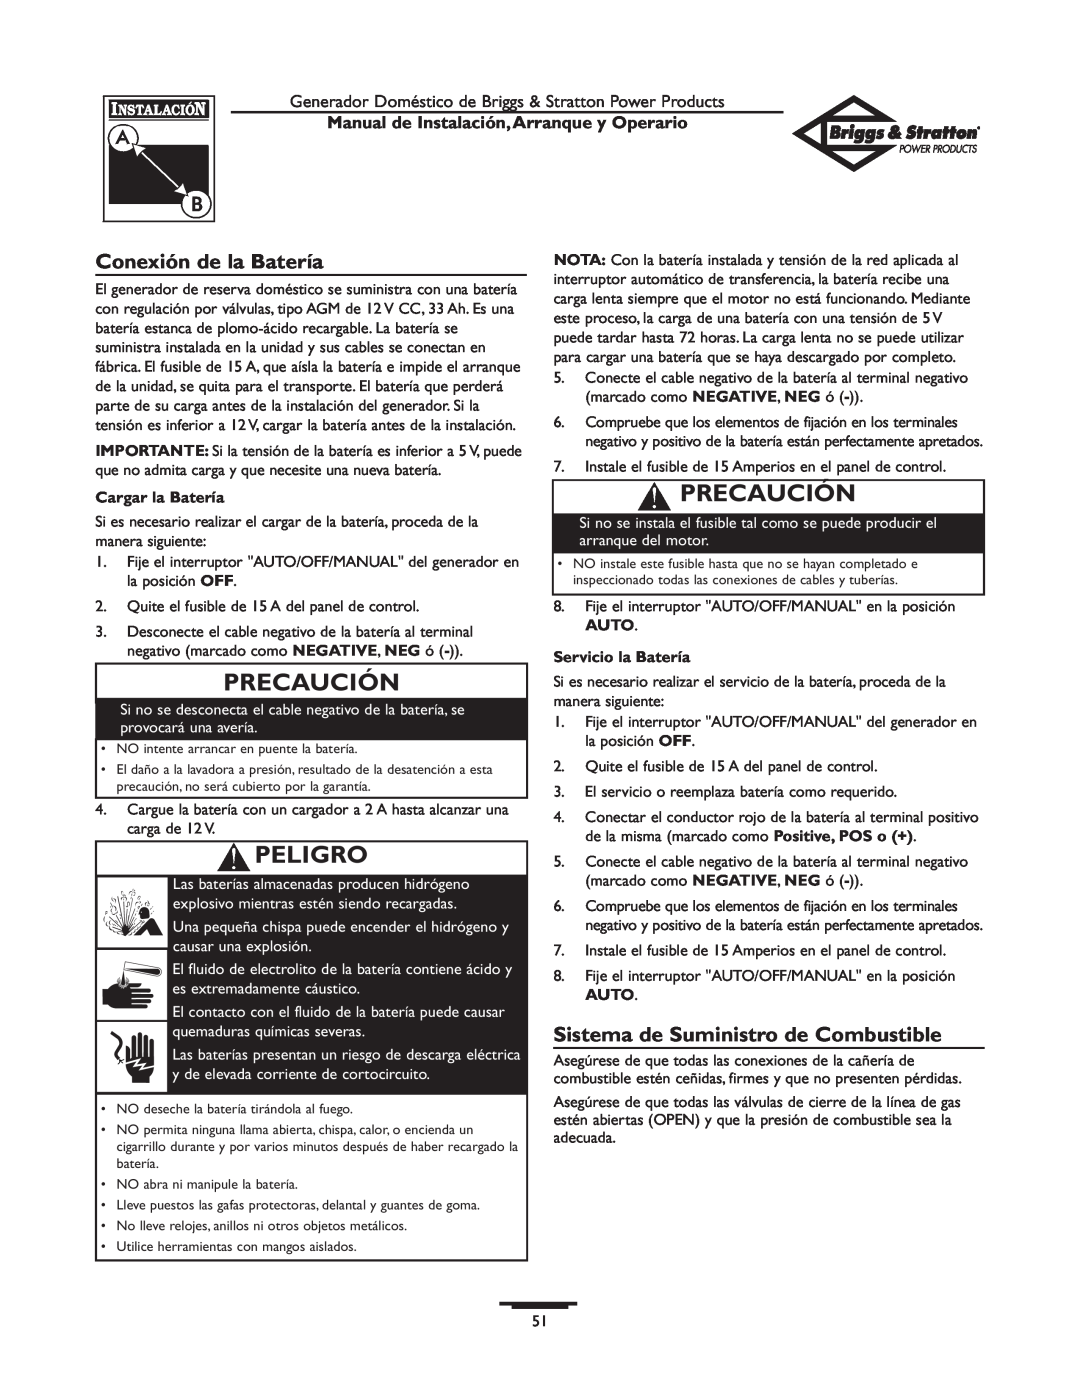 Briggs & Stratton 01897-0 manual Conexión de la Batería, Sistema de Suministro de Combustible, Precaución, Peligro 